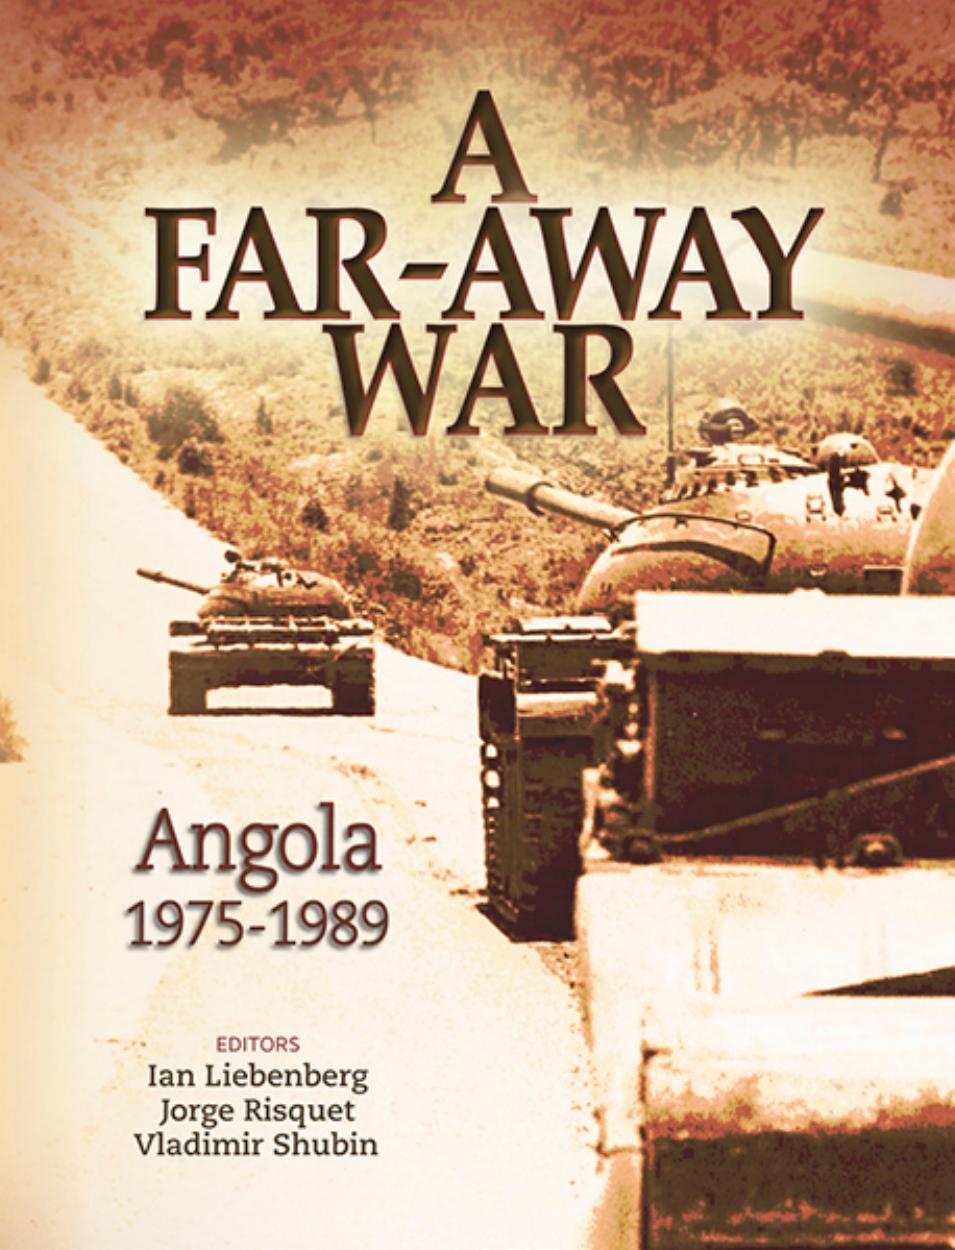 A Far-Away War : Angola 1975-1989 by Ian Liebenberg